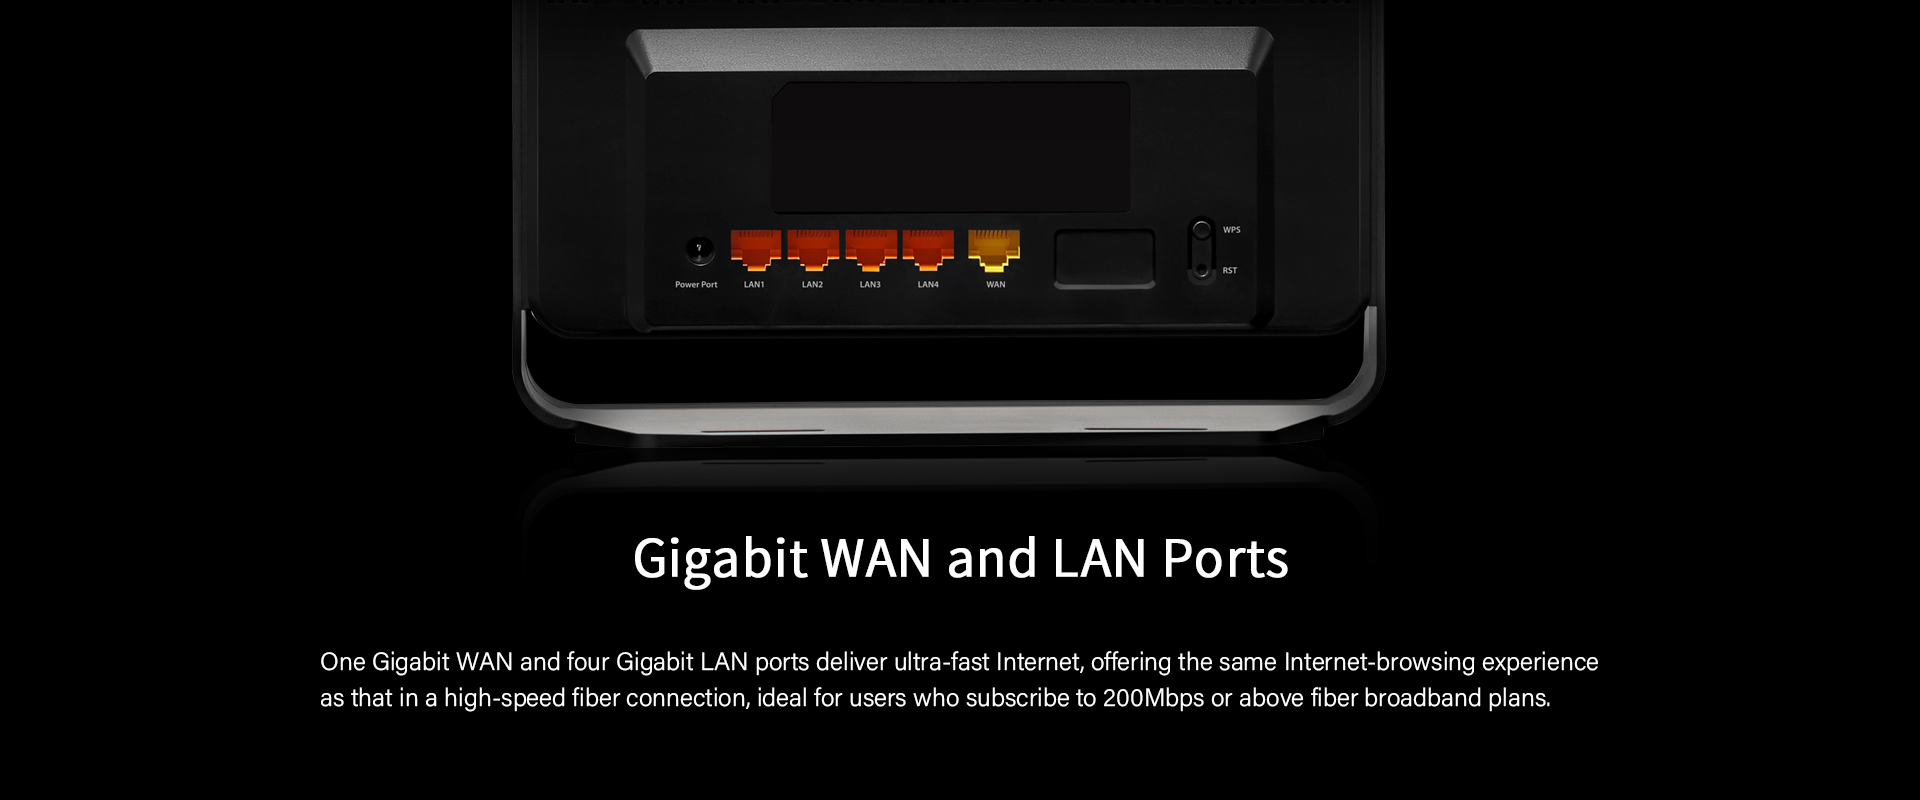 Gigabit WAN and LAN Ports 